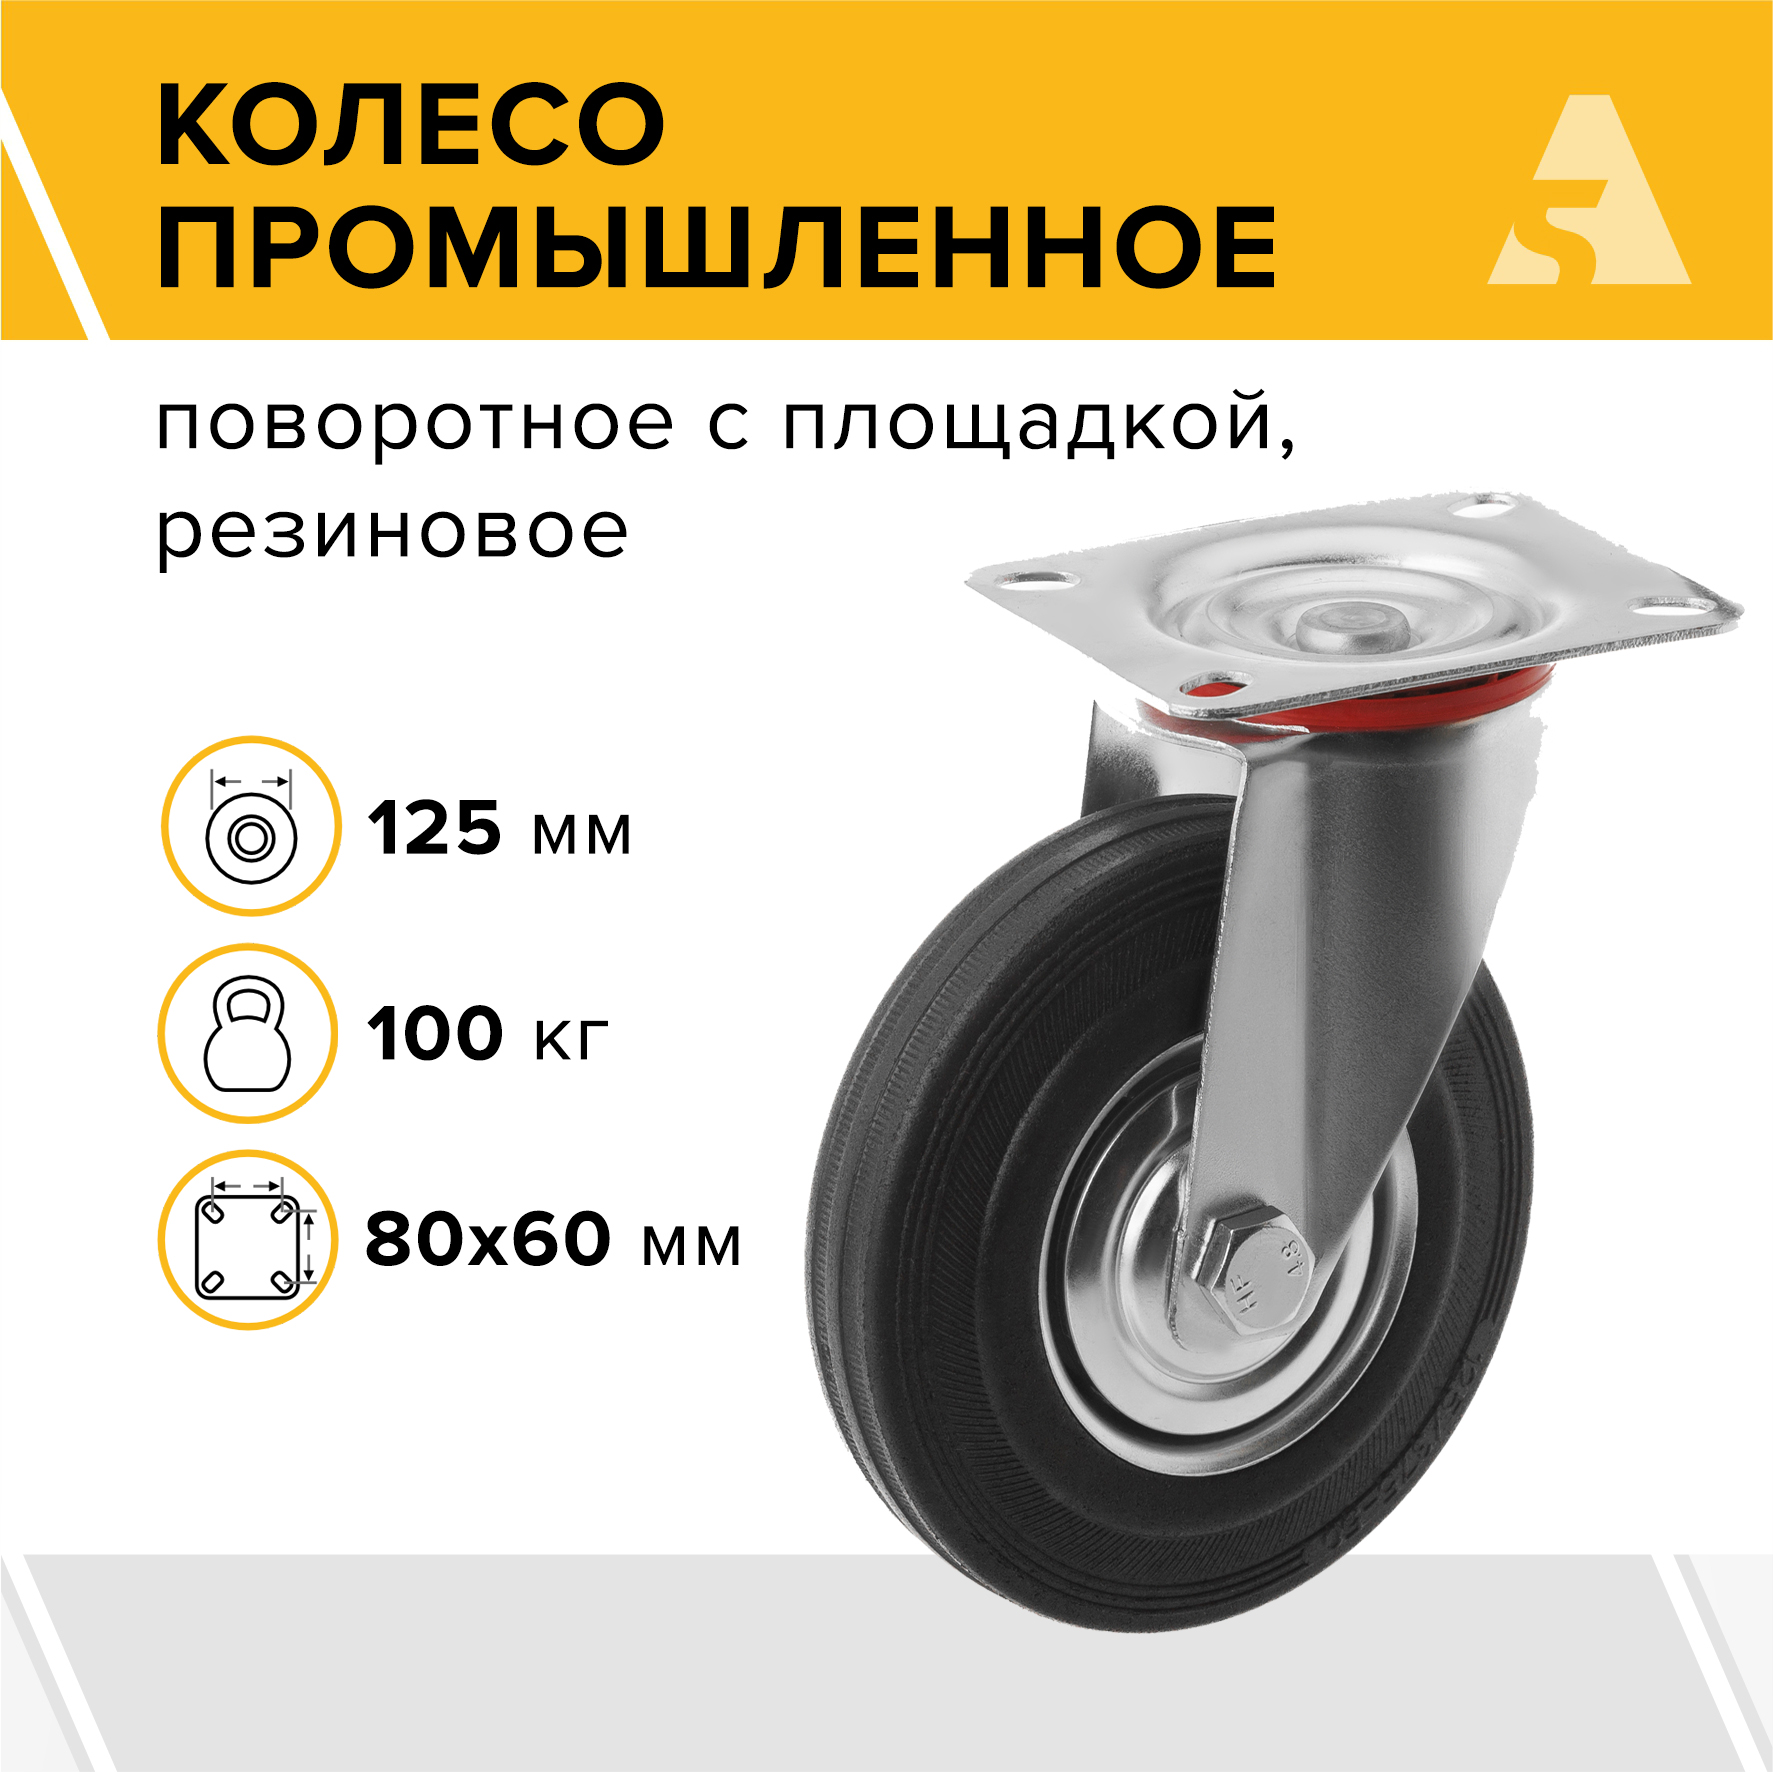 Колесо промышленное А5 SC 55 1000009 колесо промышленное неповоротное без тормоза 100 мм до 70 кг цинк